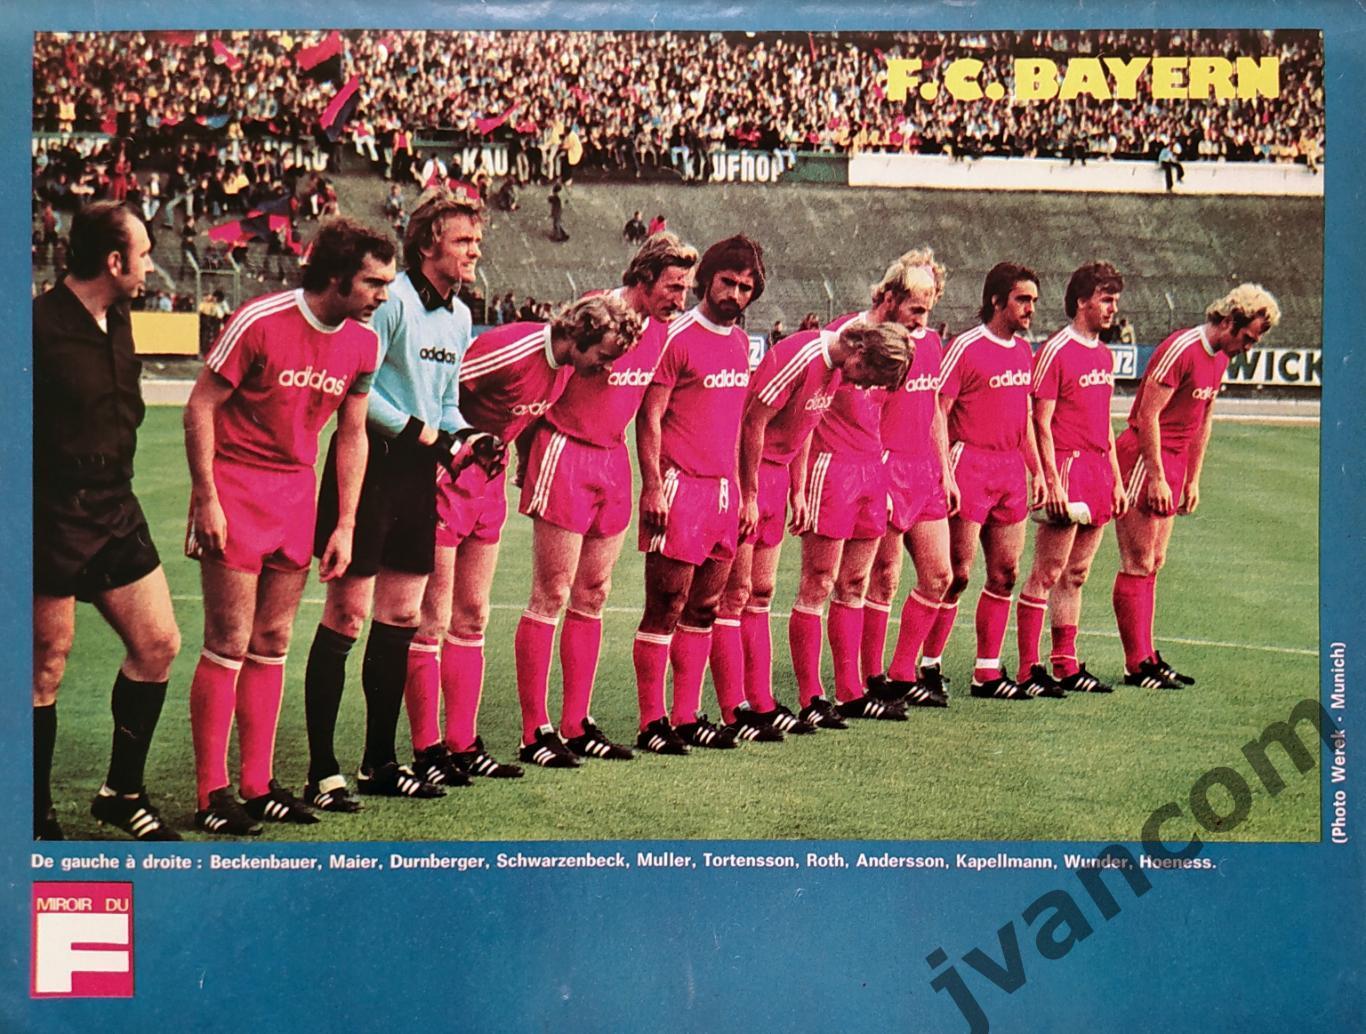 Журнал MIROIR DU FOOTBALL №240 за 1975 год. 2